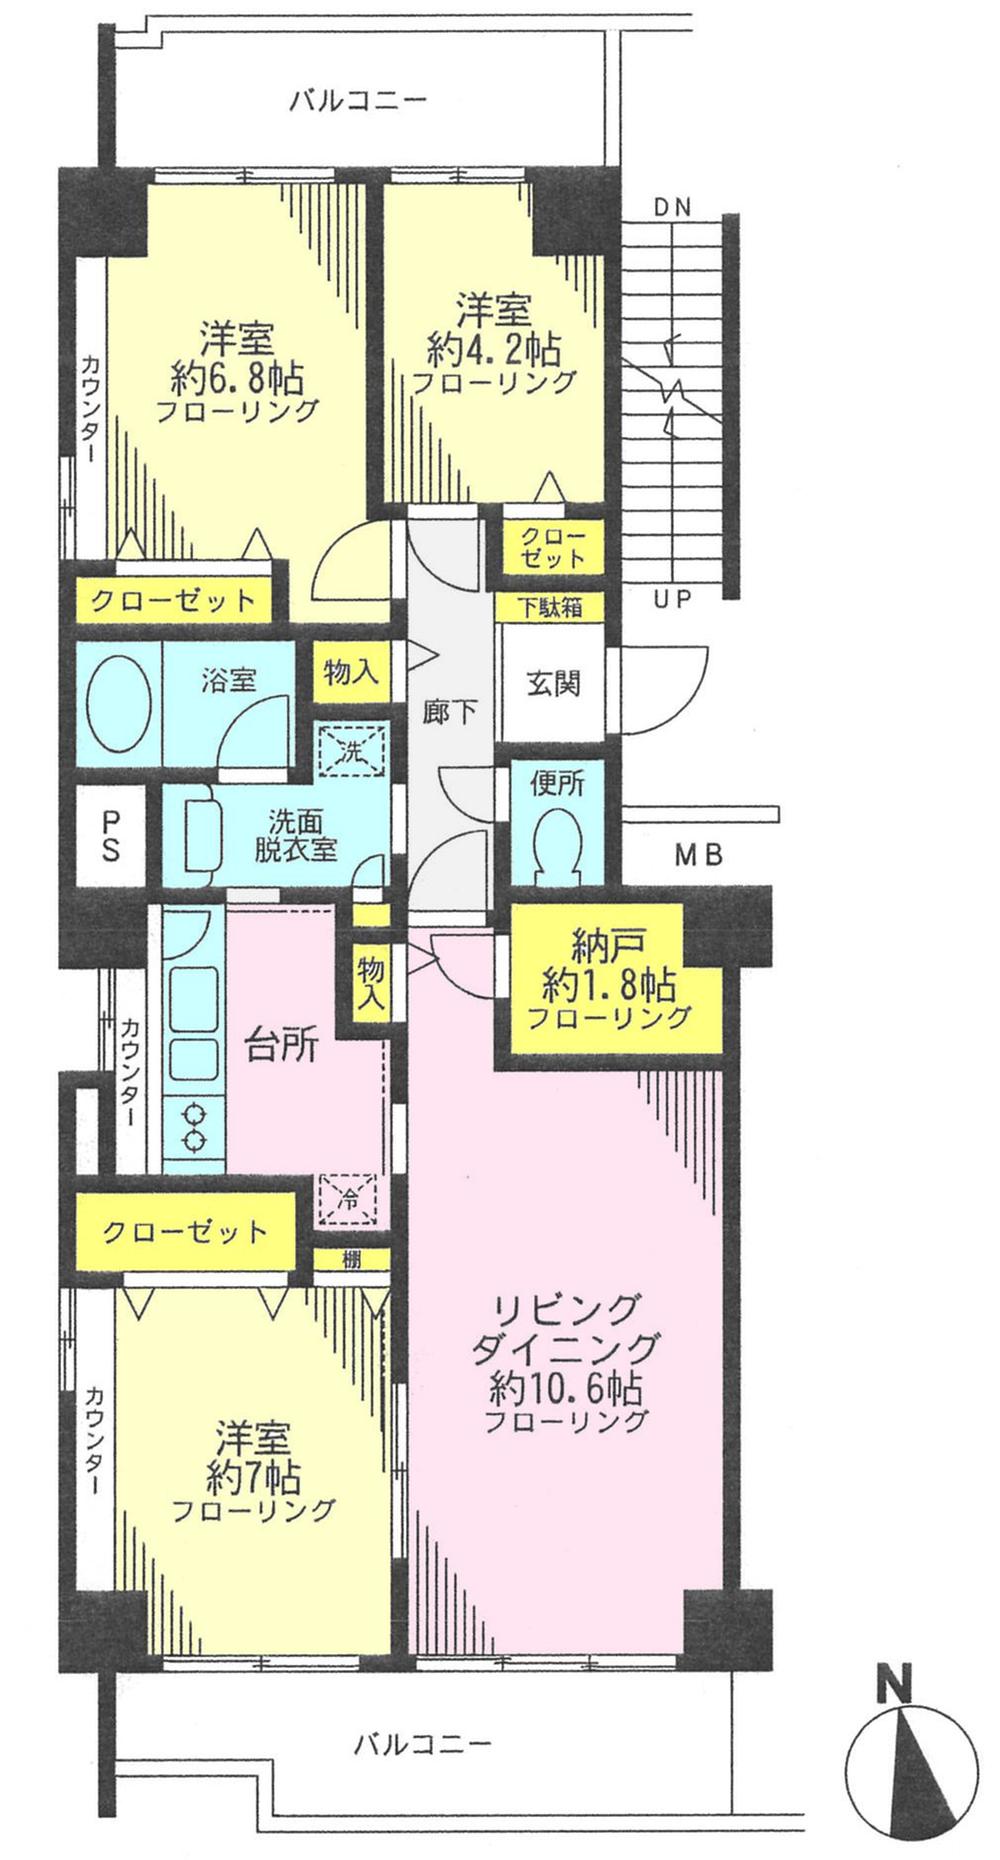 Floor plan. 3LDK, Price 38,800,000 yen, Occupied area 79.54 sq m , Balcony area 15.46 sq m floor plan